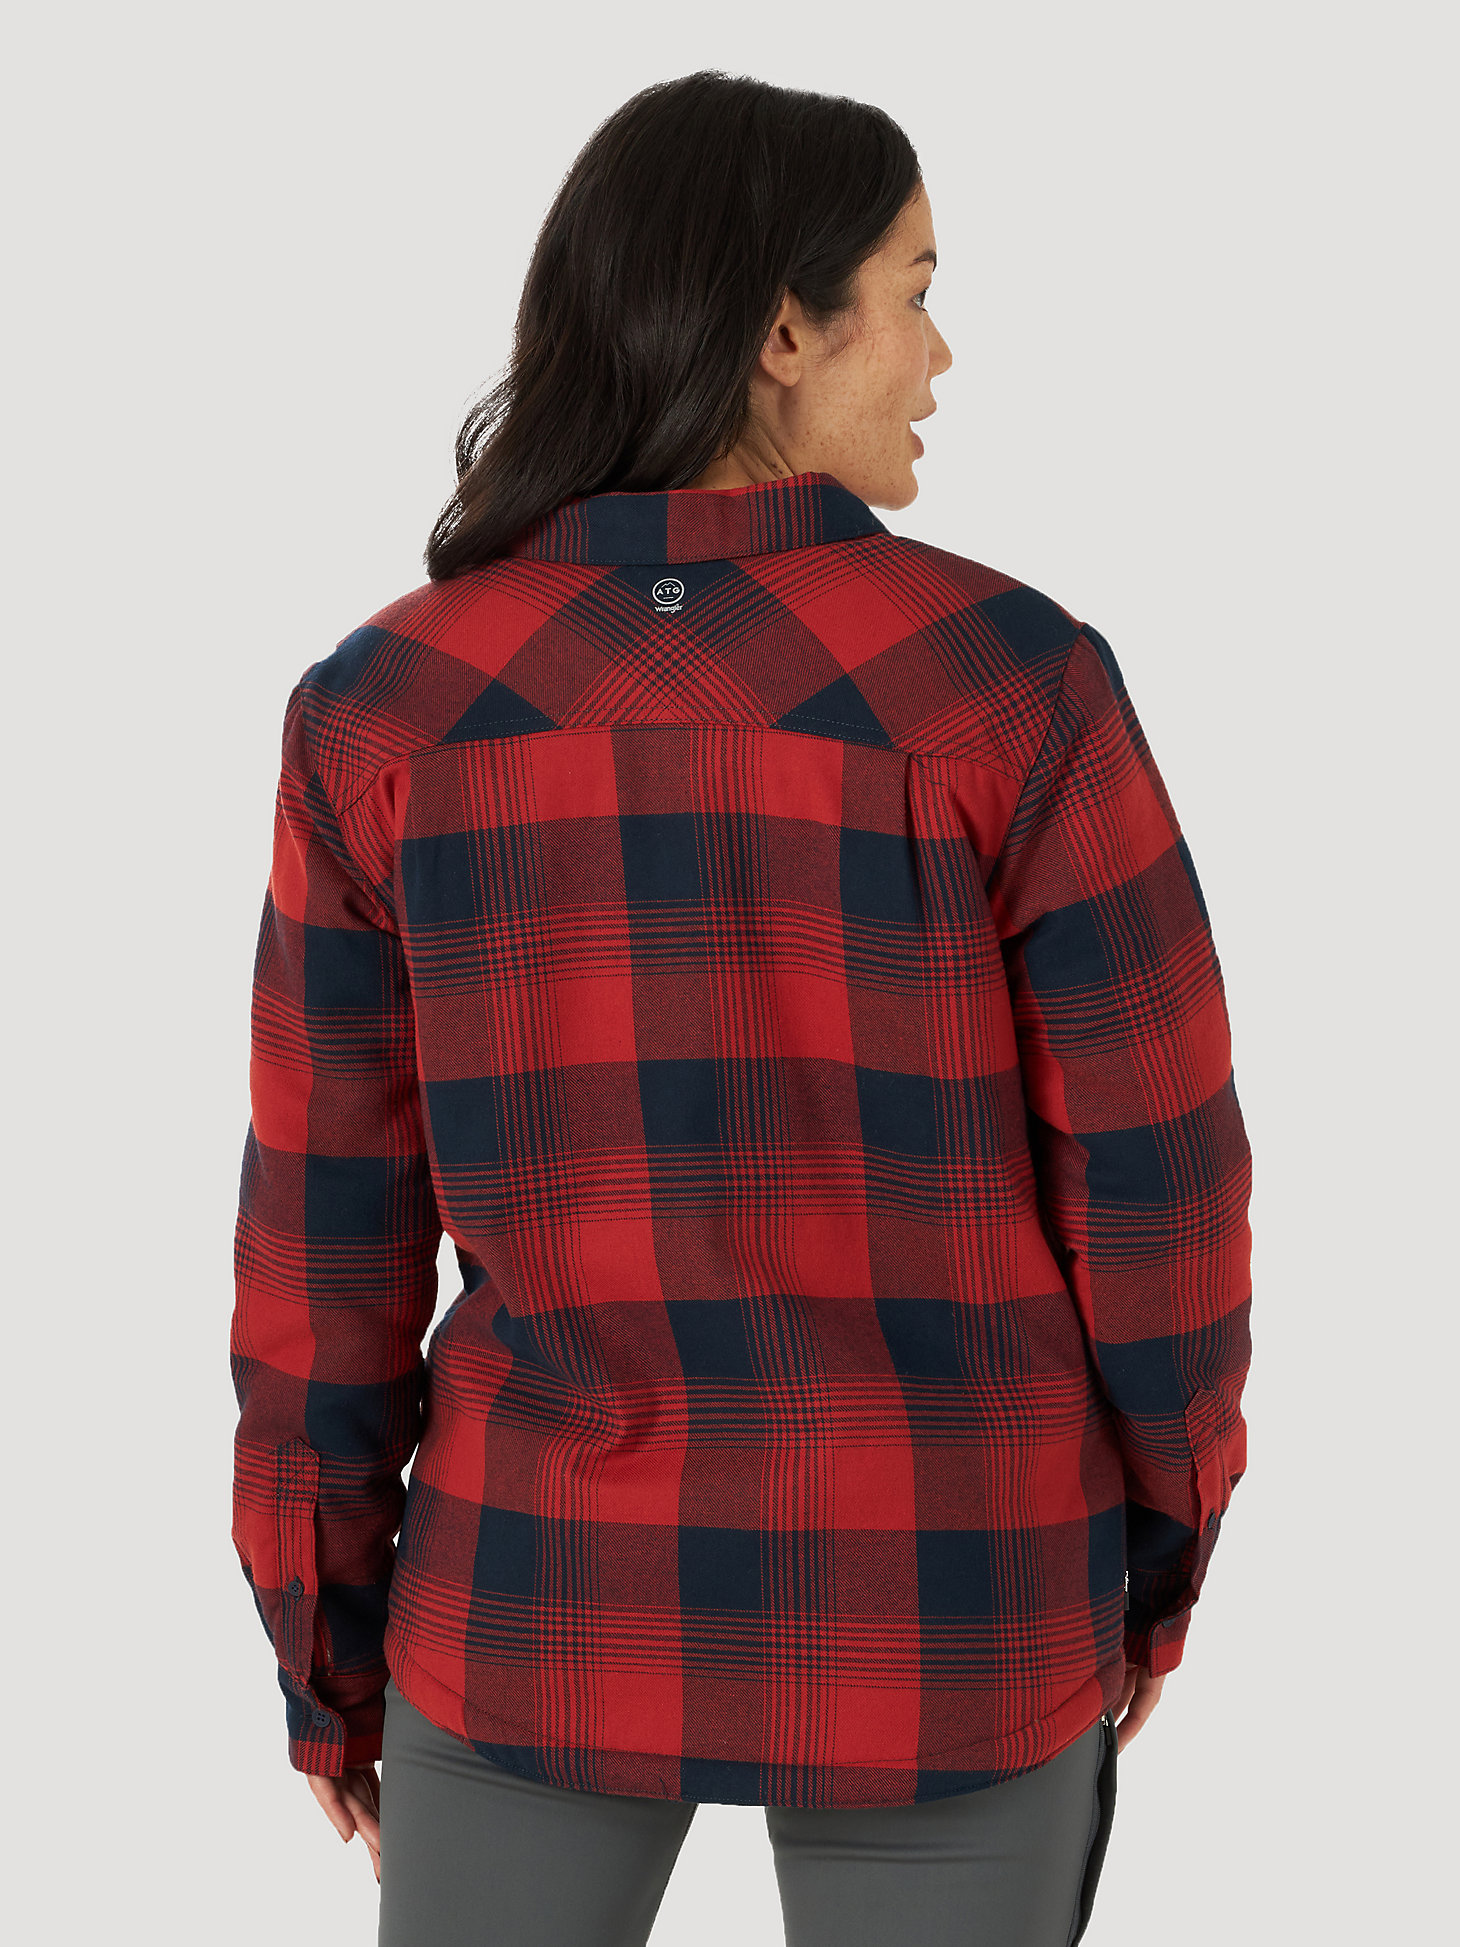 All Terrain Gear Sherpa Lined Flannel in Red Ochre alternative view 1